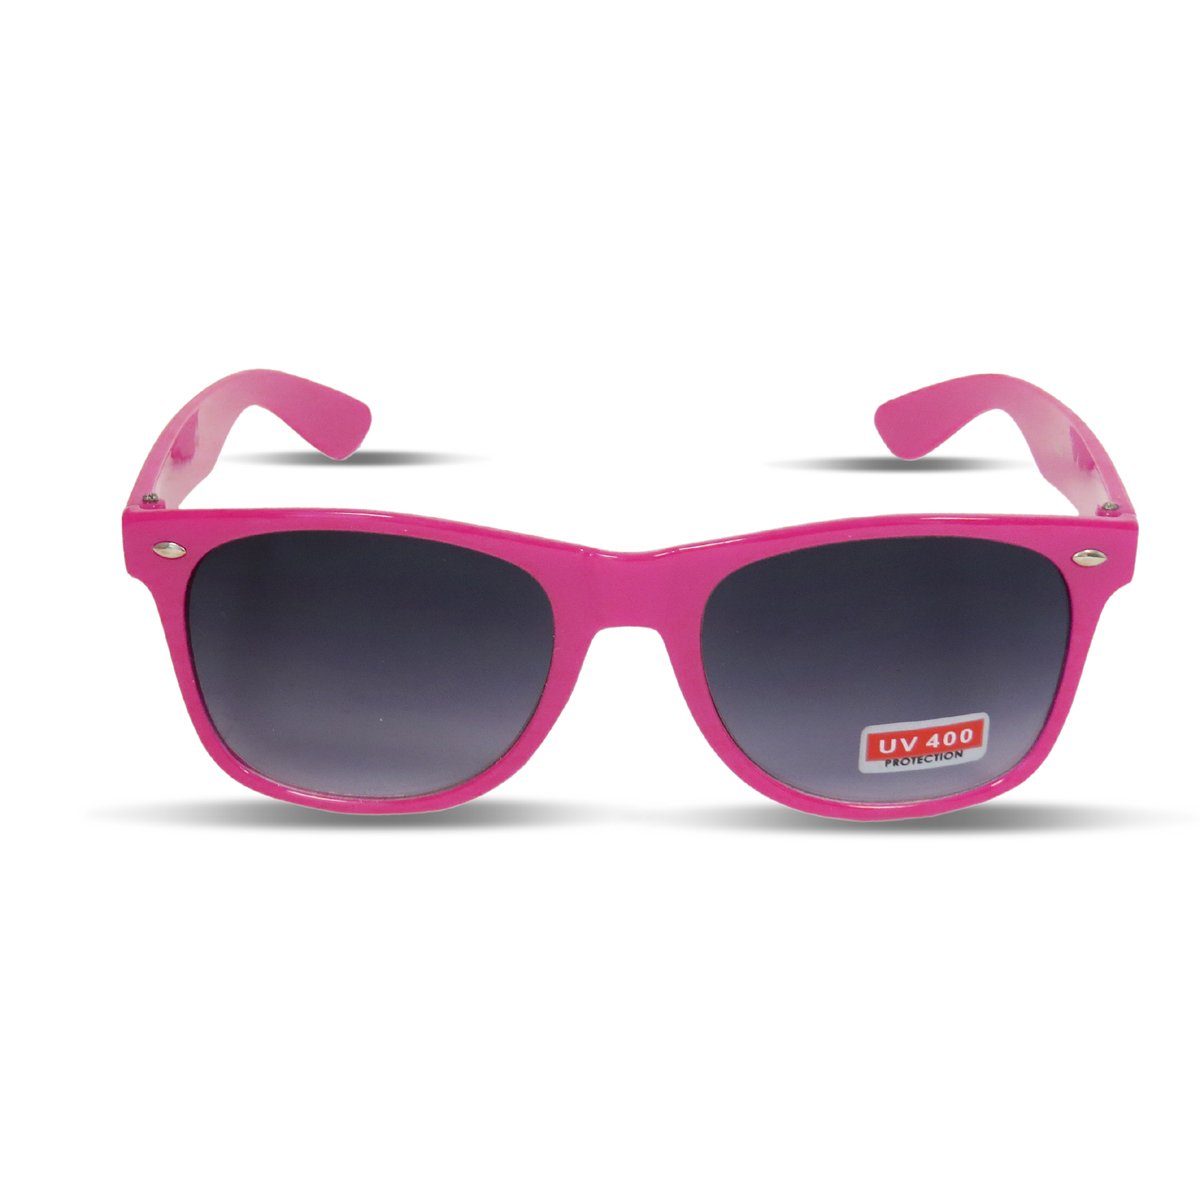 Sonia Originelli Sonnenbrille Sonnenbrille Brille Verspiegelt Party Klassik Onesize pink | Sonnenbrillen